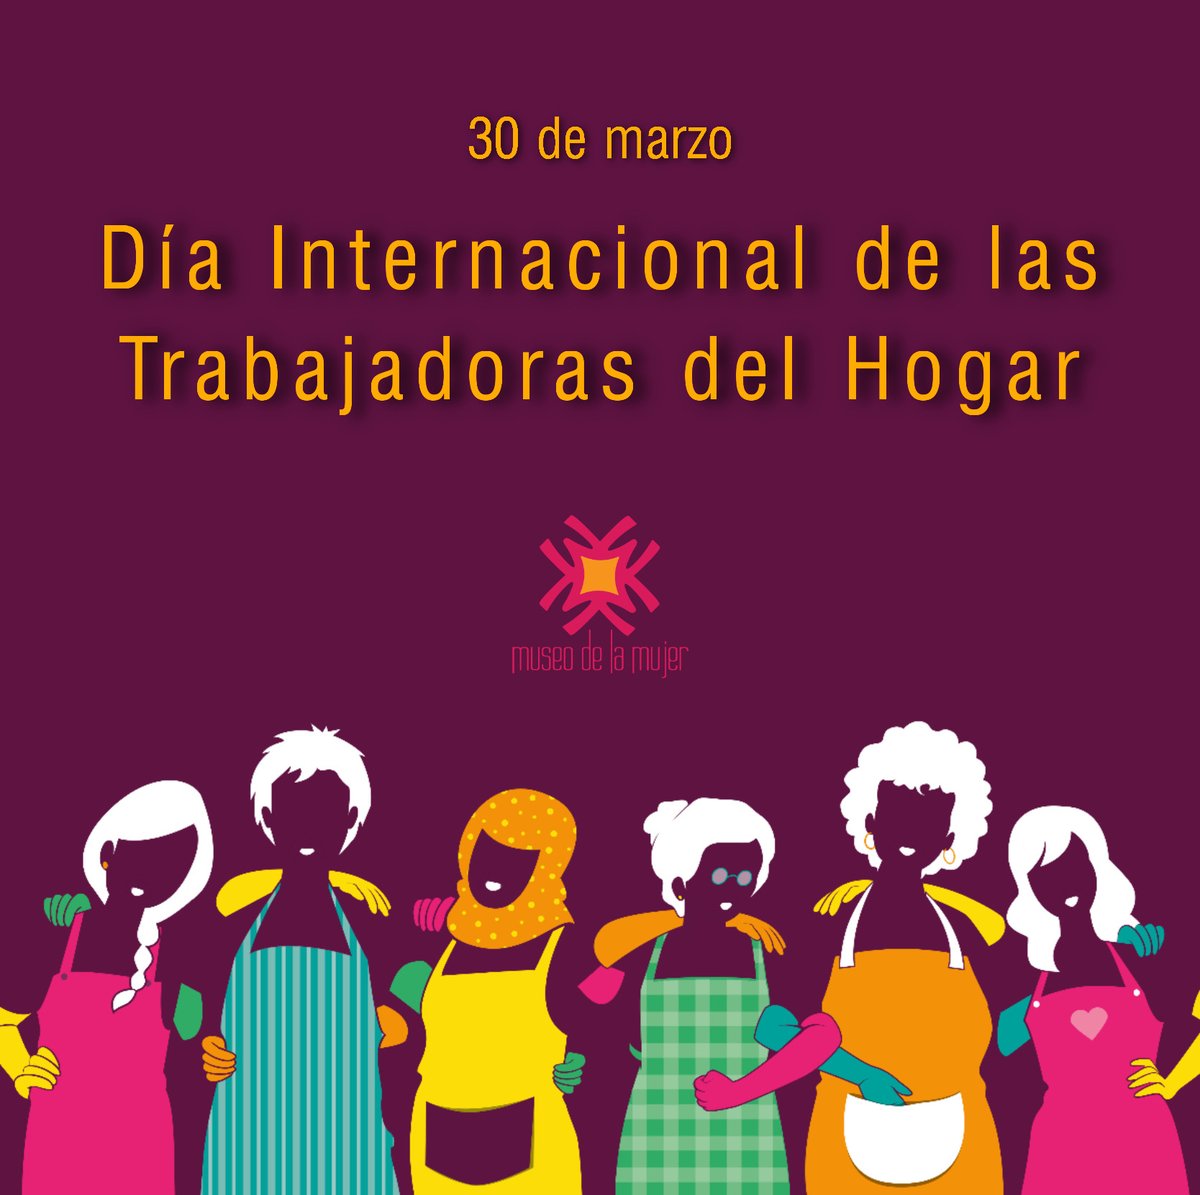 Twitter 上的 Museo de la Mujer："30 de marzo. Día Internacional de las  Trabajadoras del Hogar. Fue proclamado en 1988 durante el primer Congreso  de Trabajadoras del Hogar, en Bogotá, Colombia. ♀🗣 Tiene